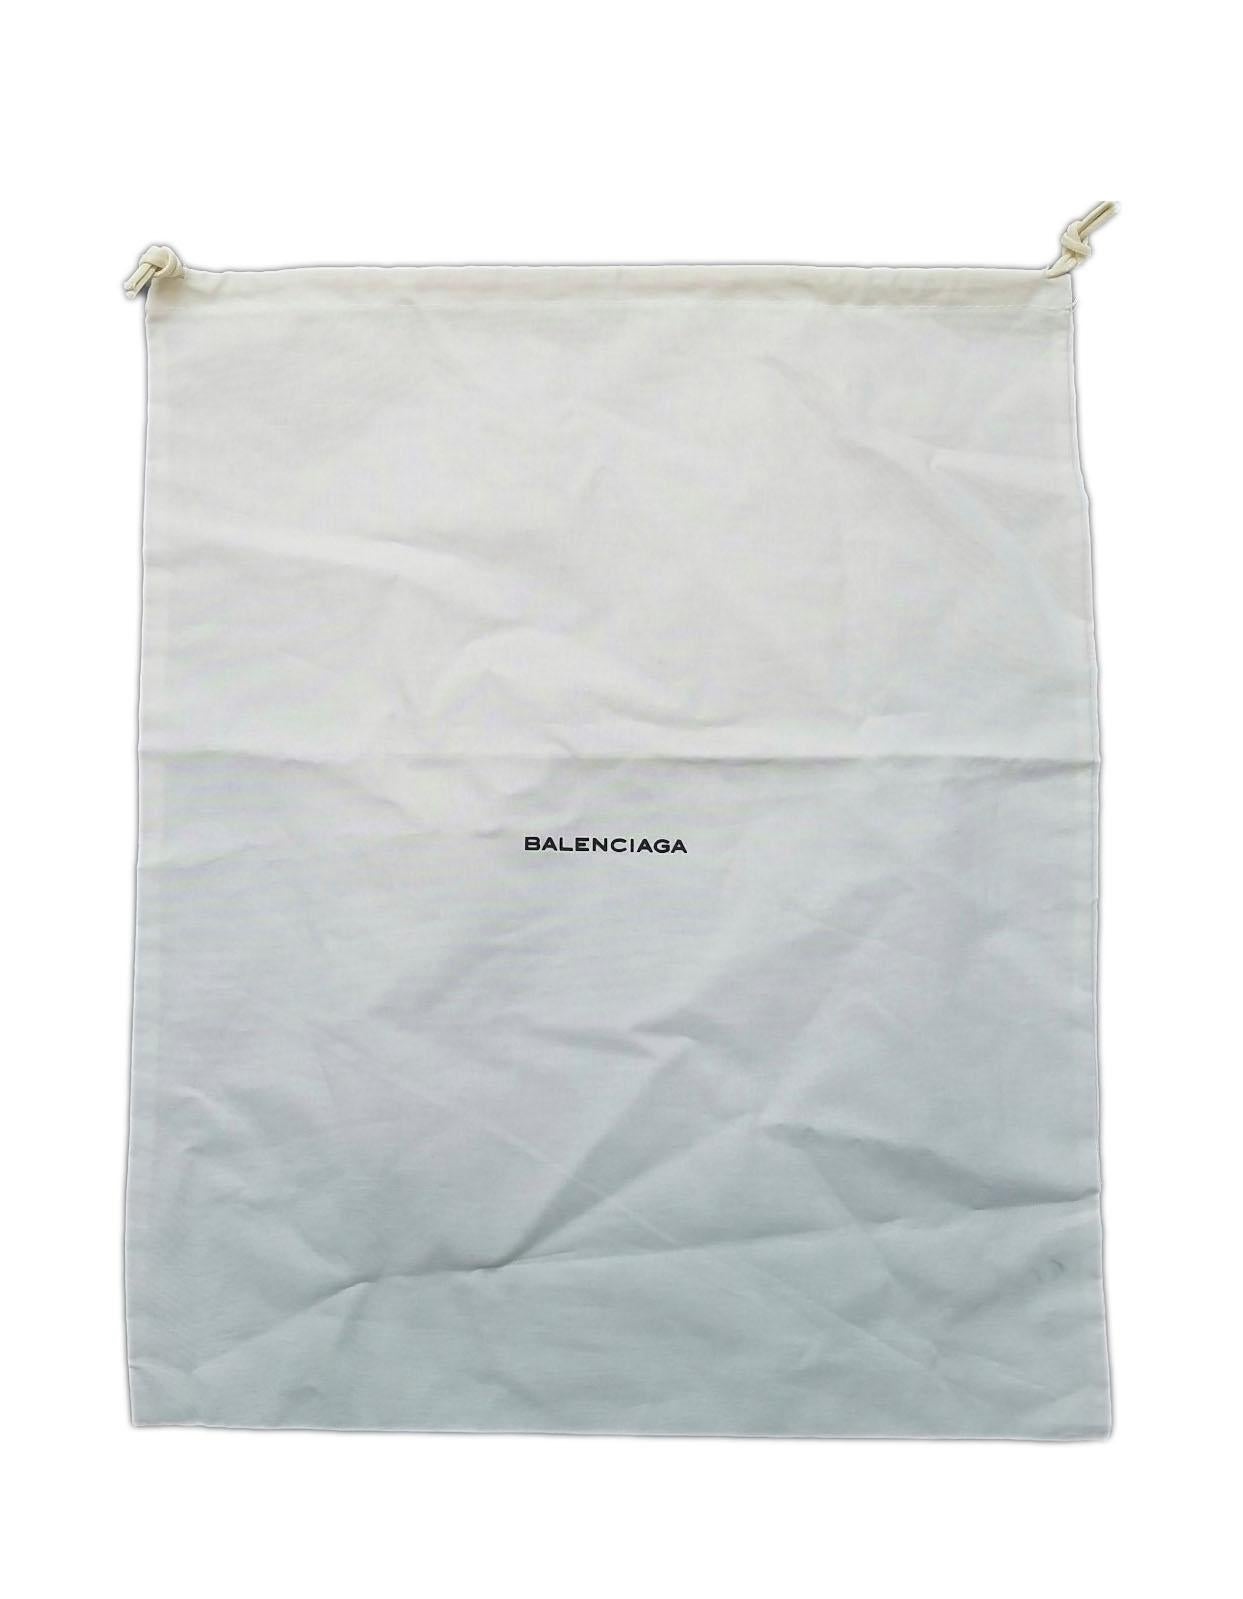 Balenciaga Black Leather Mini Papier A4 Crossbody Tote Bag w/ Neon Accents 4